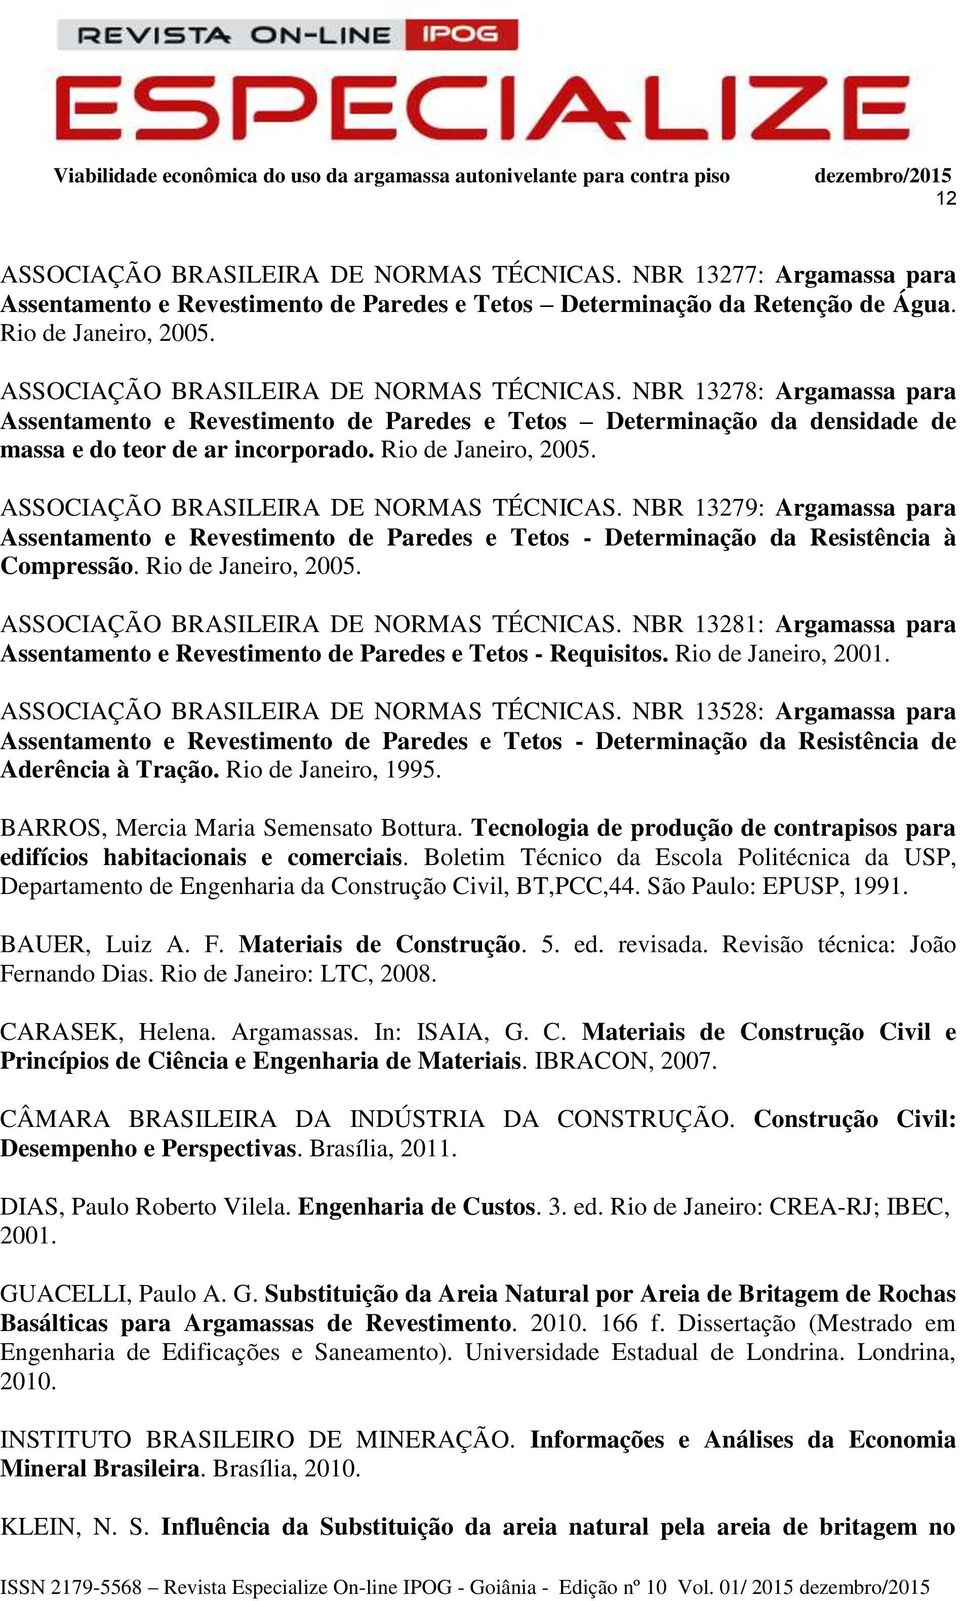 ASSOCIAÇÃO BRASILEIRA DE NORMAS TÉCNICAS. NBR 13279: Argamassa para Assentamento e Revestimento de Paredes e Tetos - Determinação da Resistência à Compressão. Rio de Janeiro, 2005.